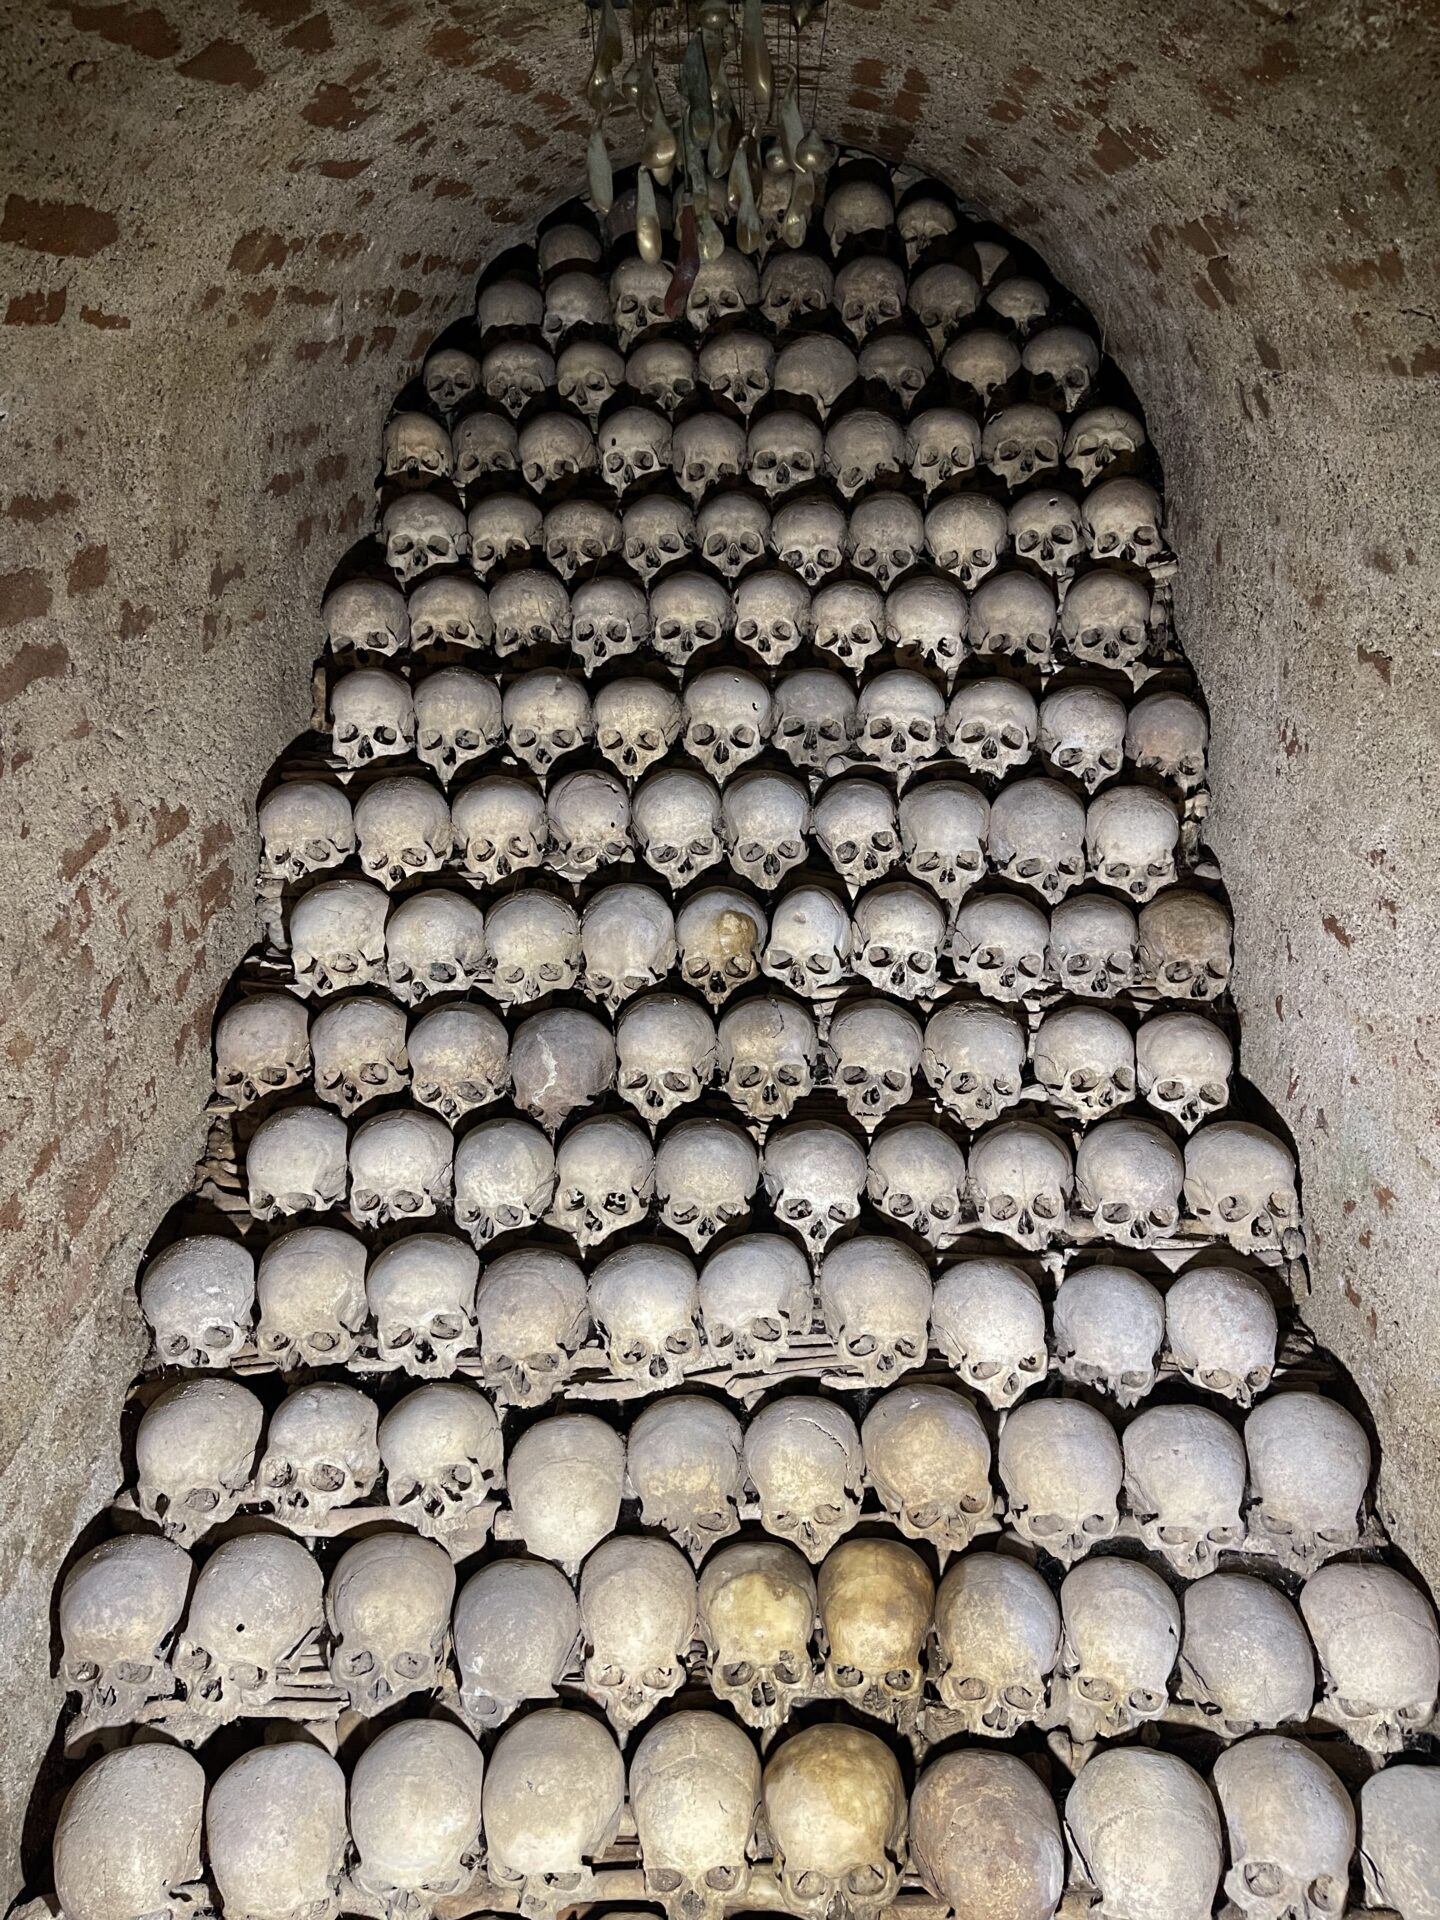 brno ossuary chapel - Brno Ossuary at St. James Church